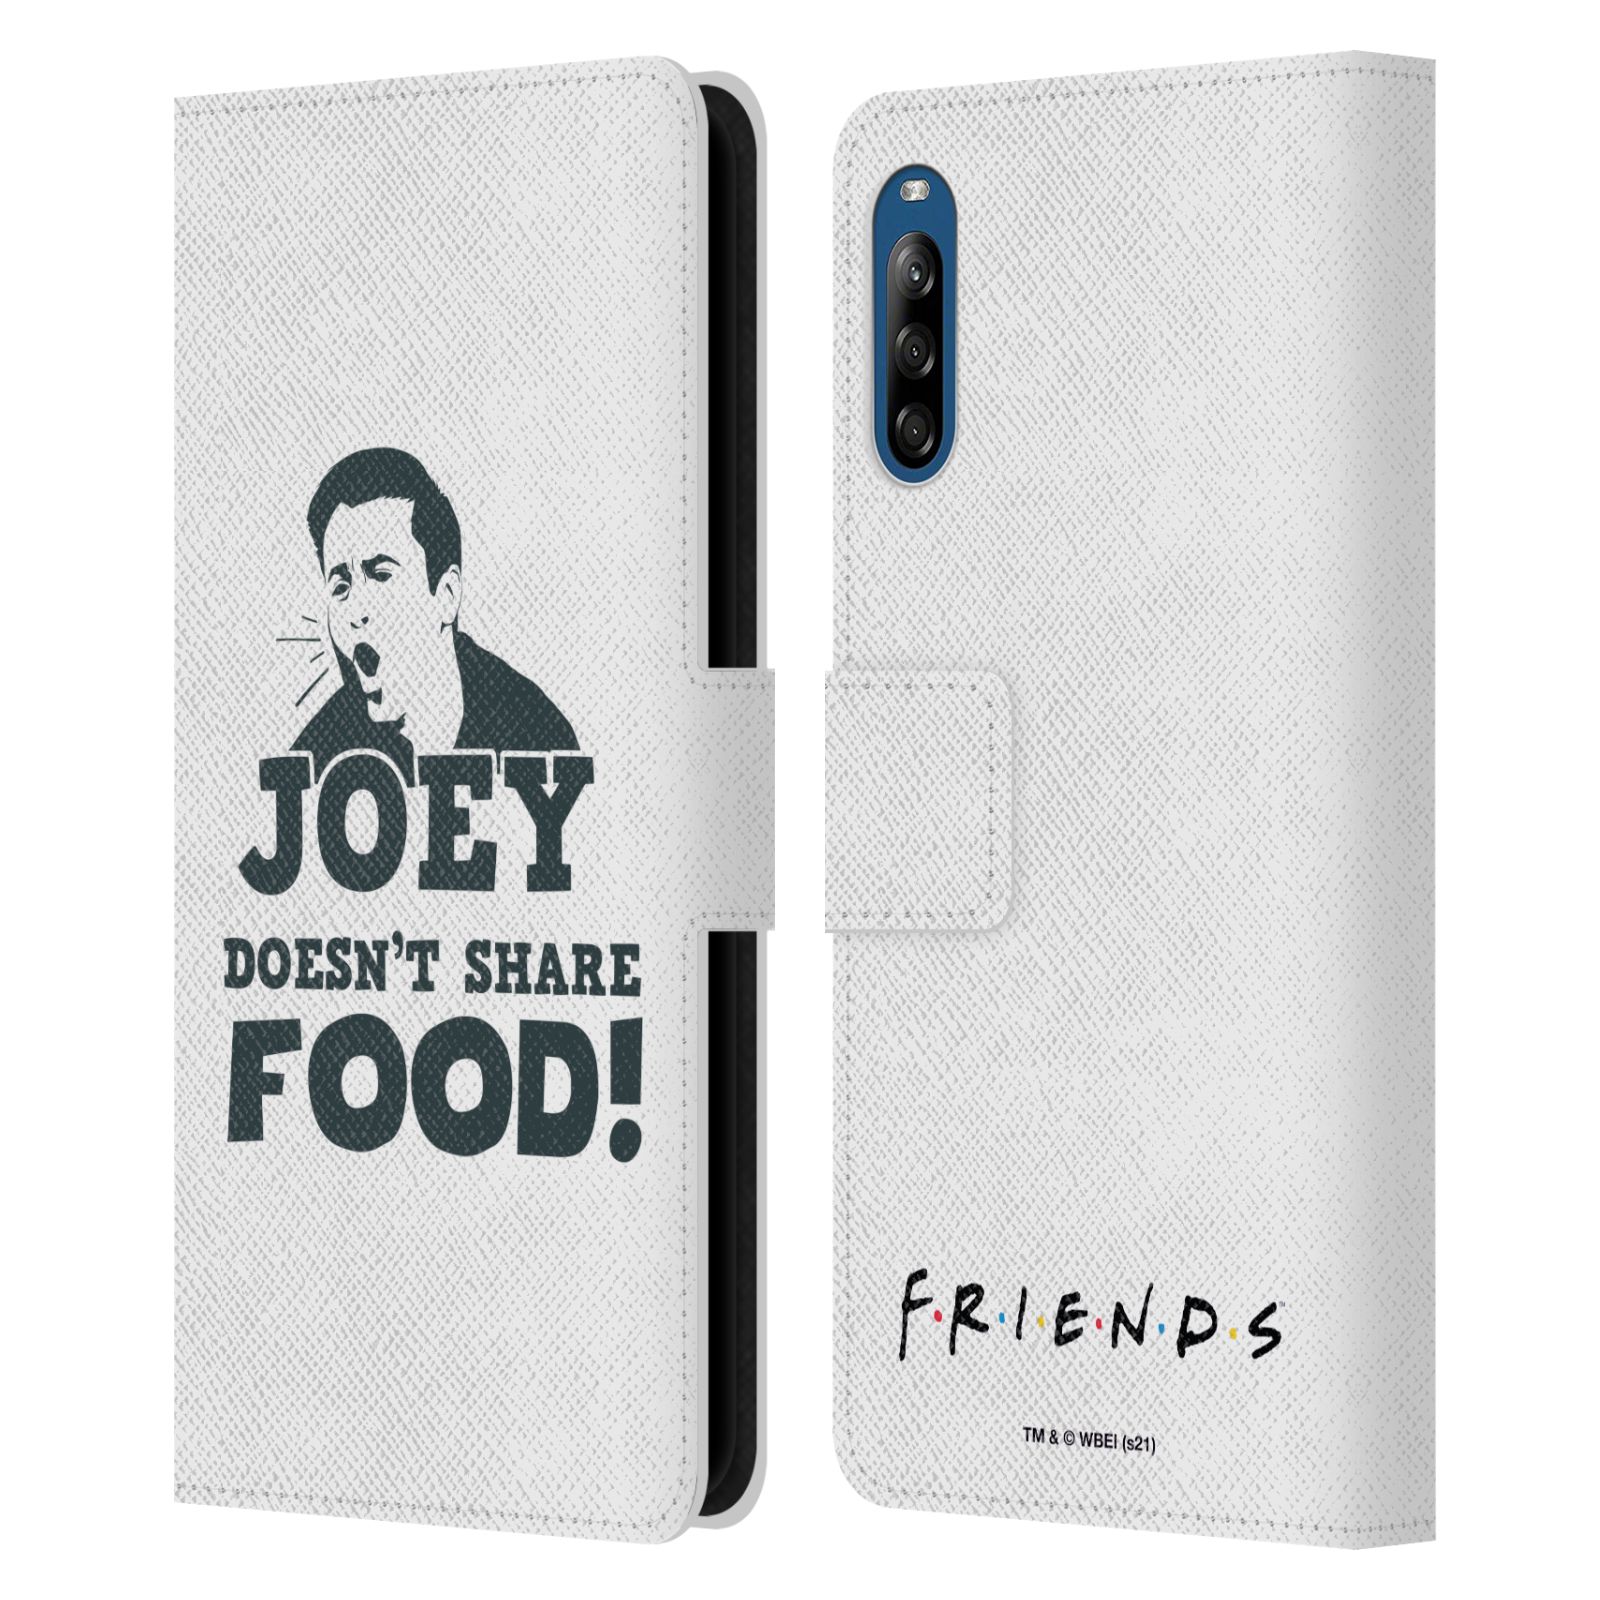 Pouzdro pro mobil Sony Xperia L4 - HEAD CASE - Seriál přátelé - Joey se o jídlo nedělí